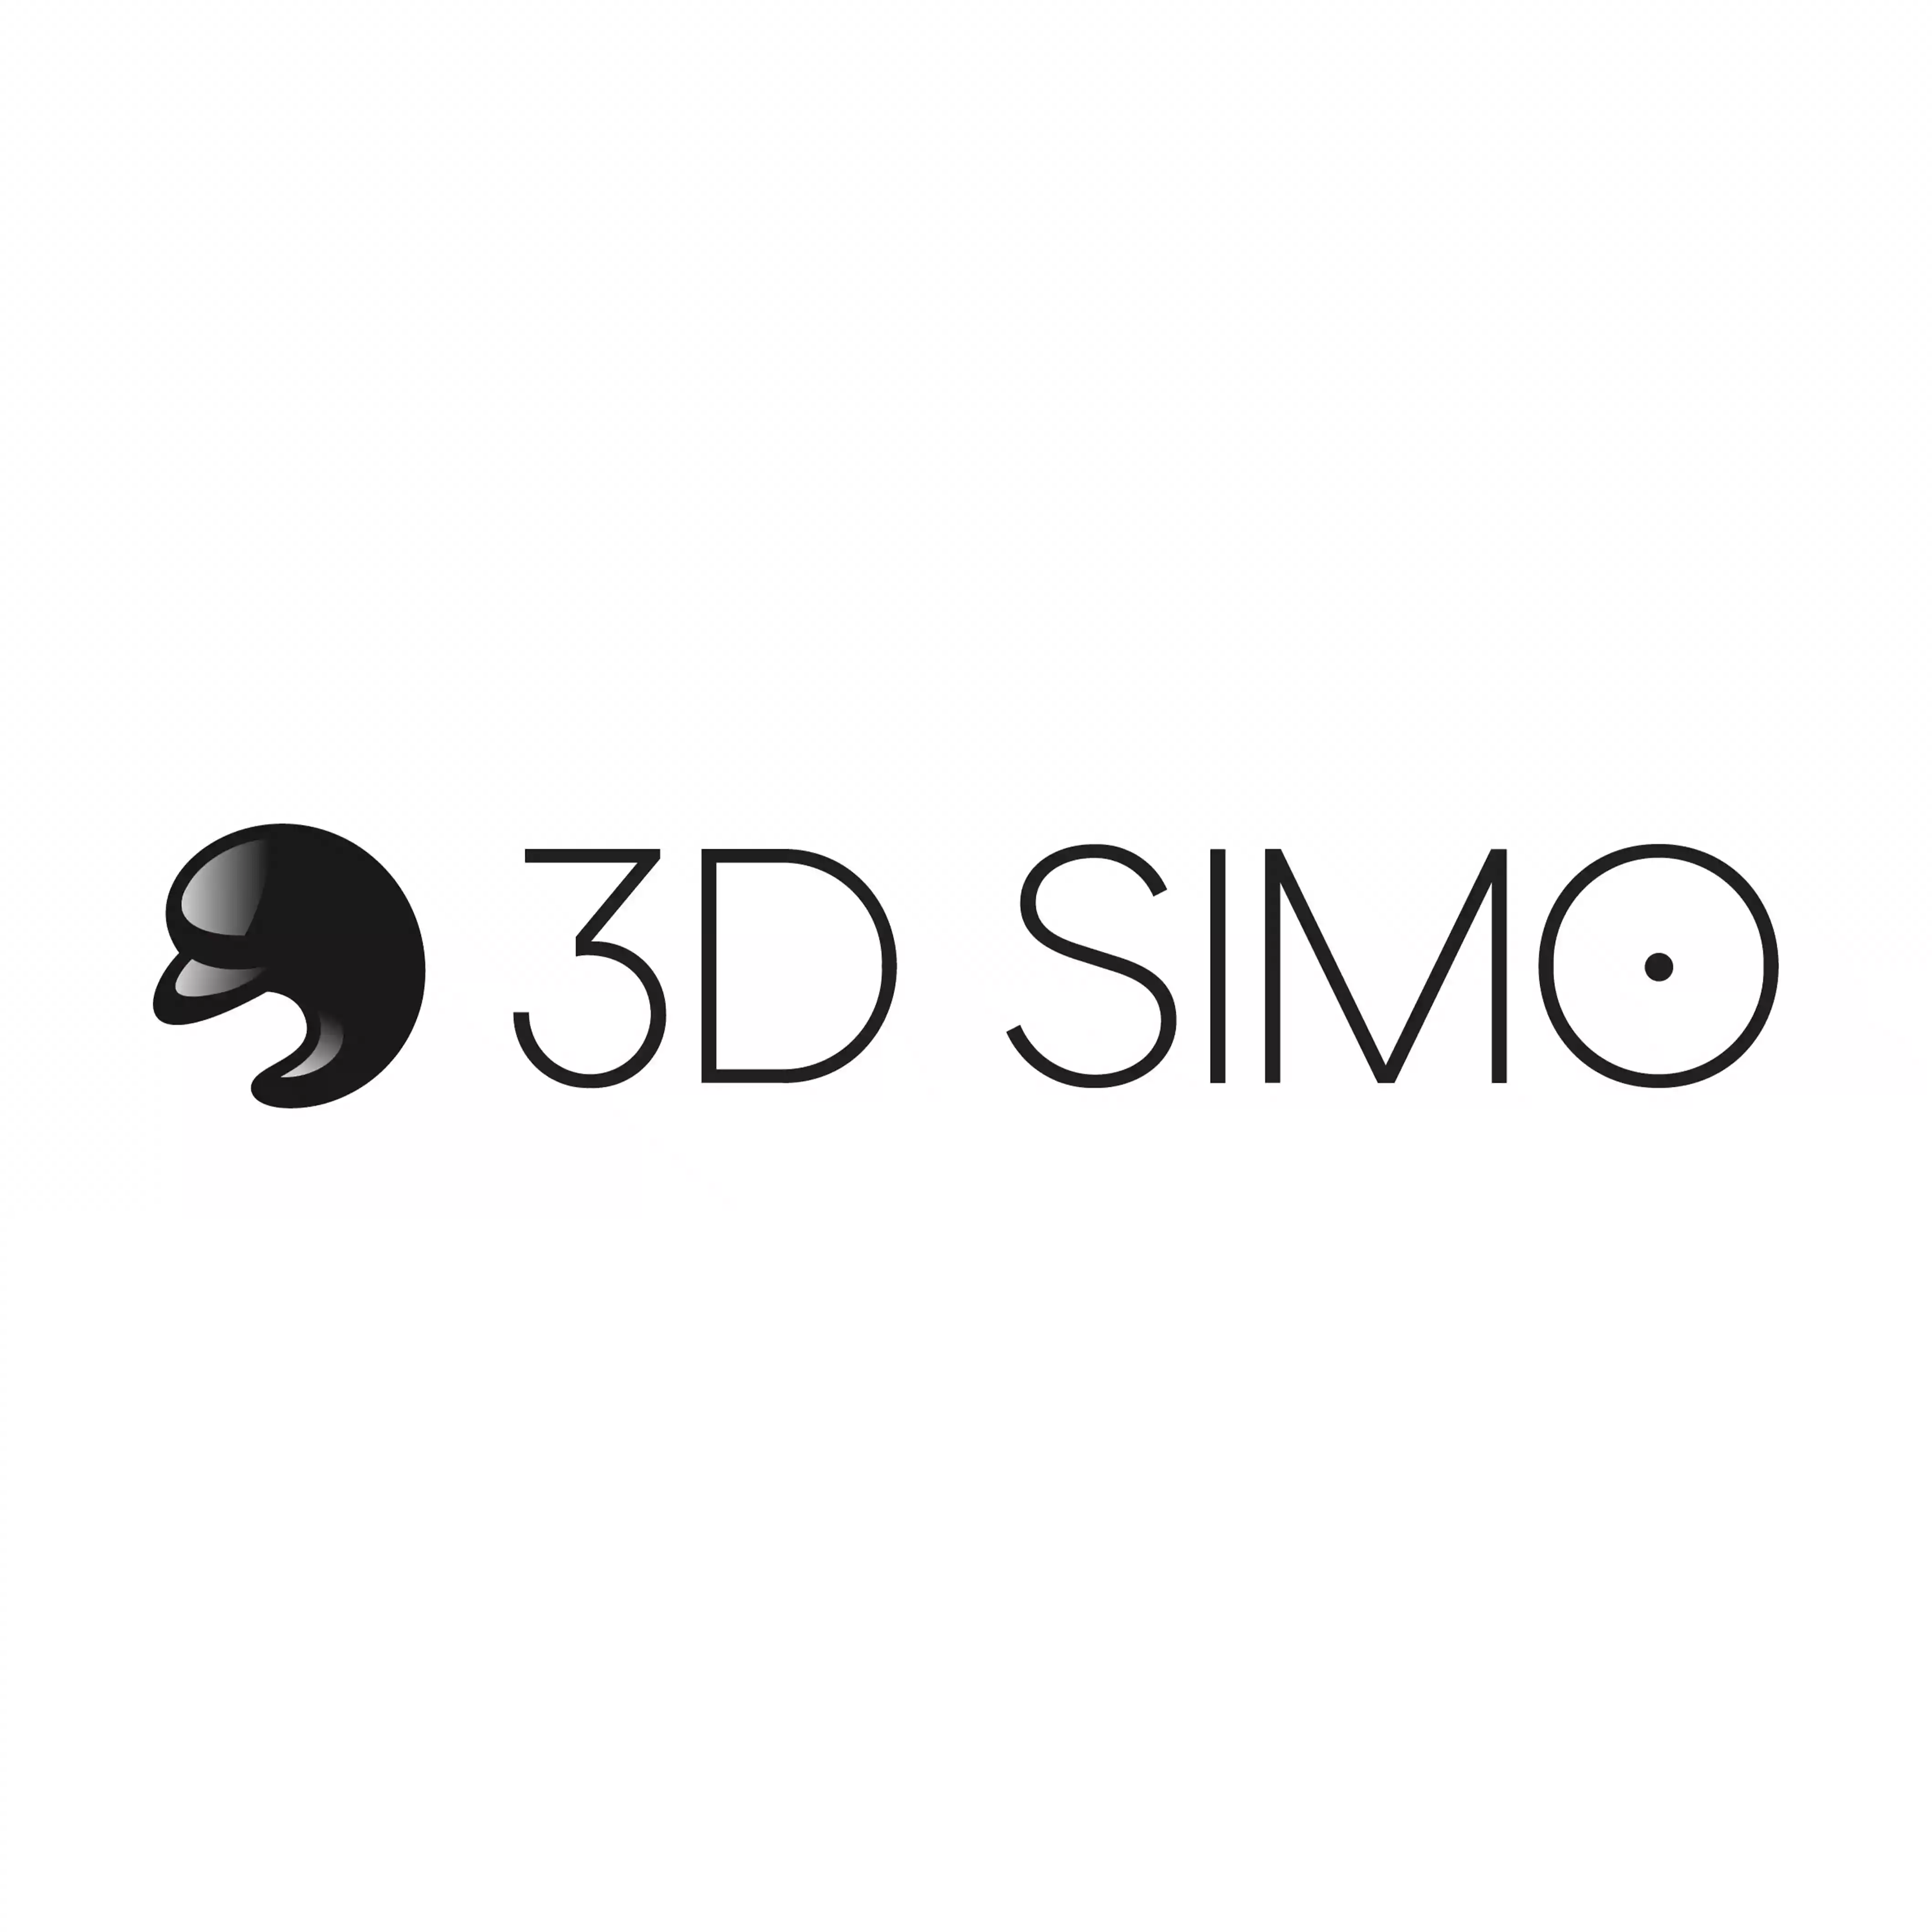 3Dsimo logo